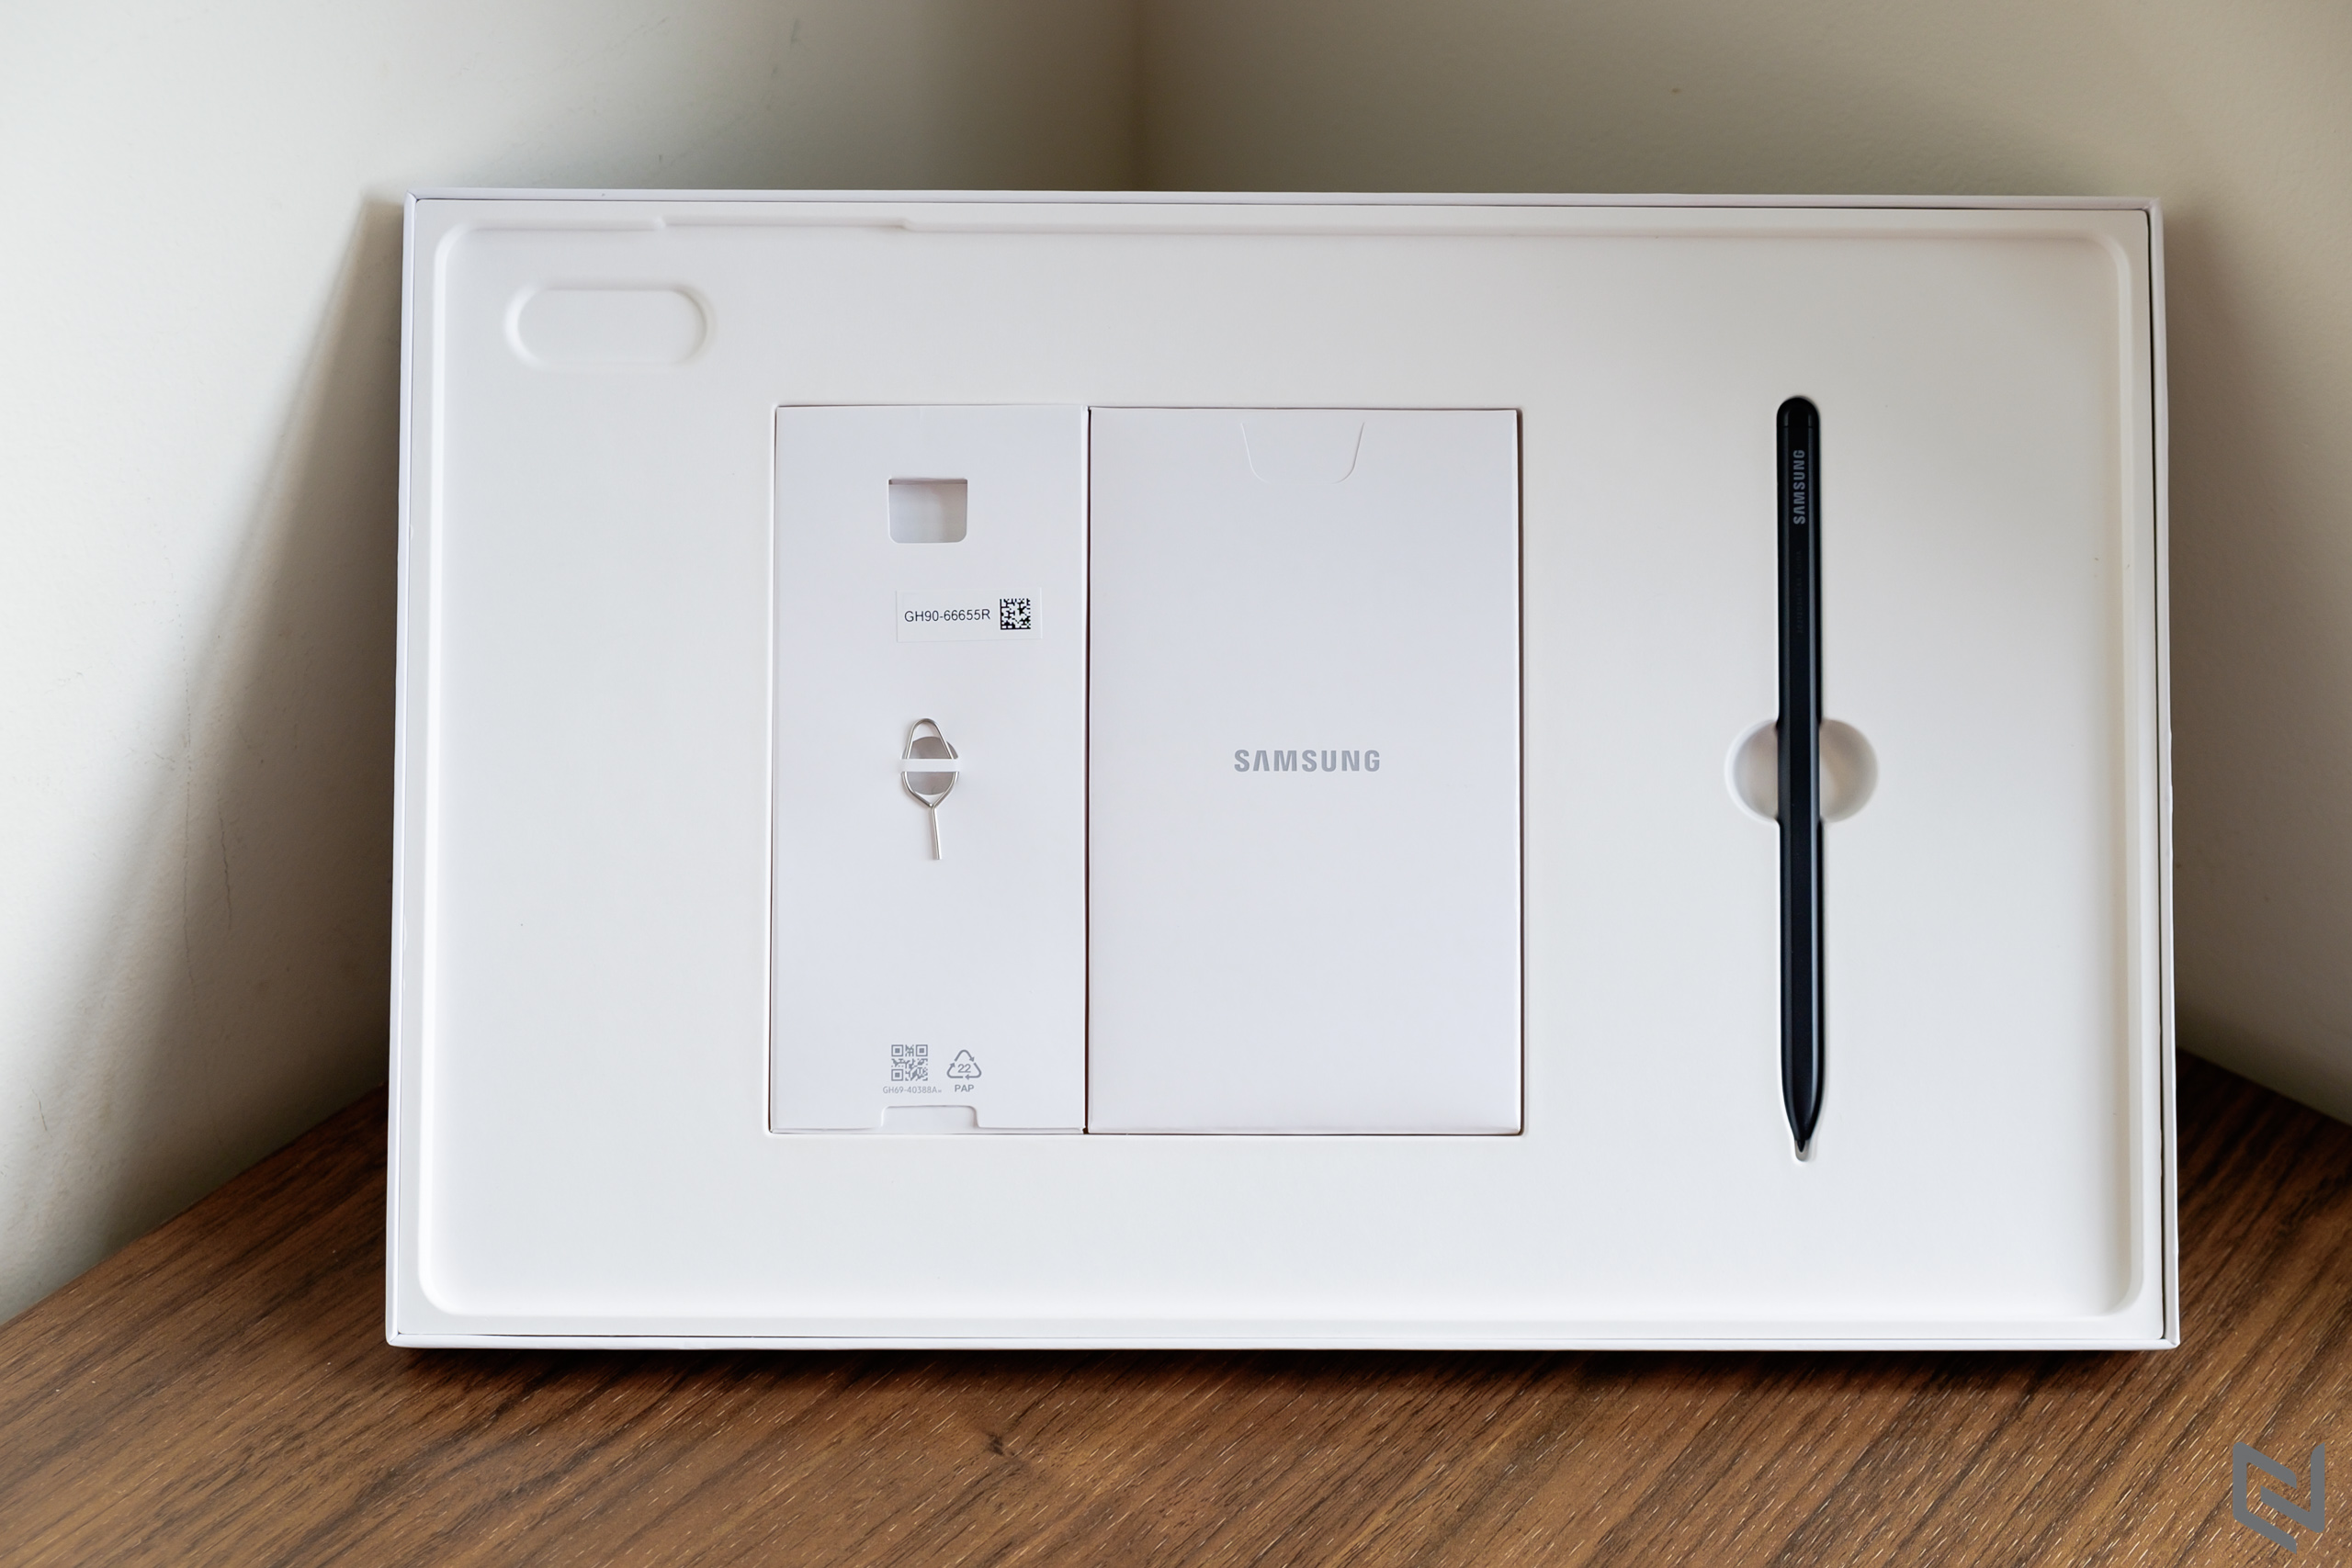 Khám phá máy tính bảng Galaxy Tab S8 Series mới nhất từ Samsung với loạt thông số và tính năng ấn tượng